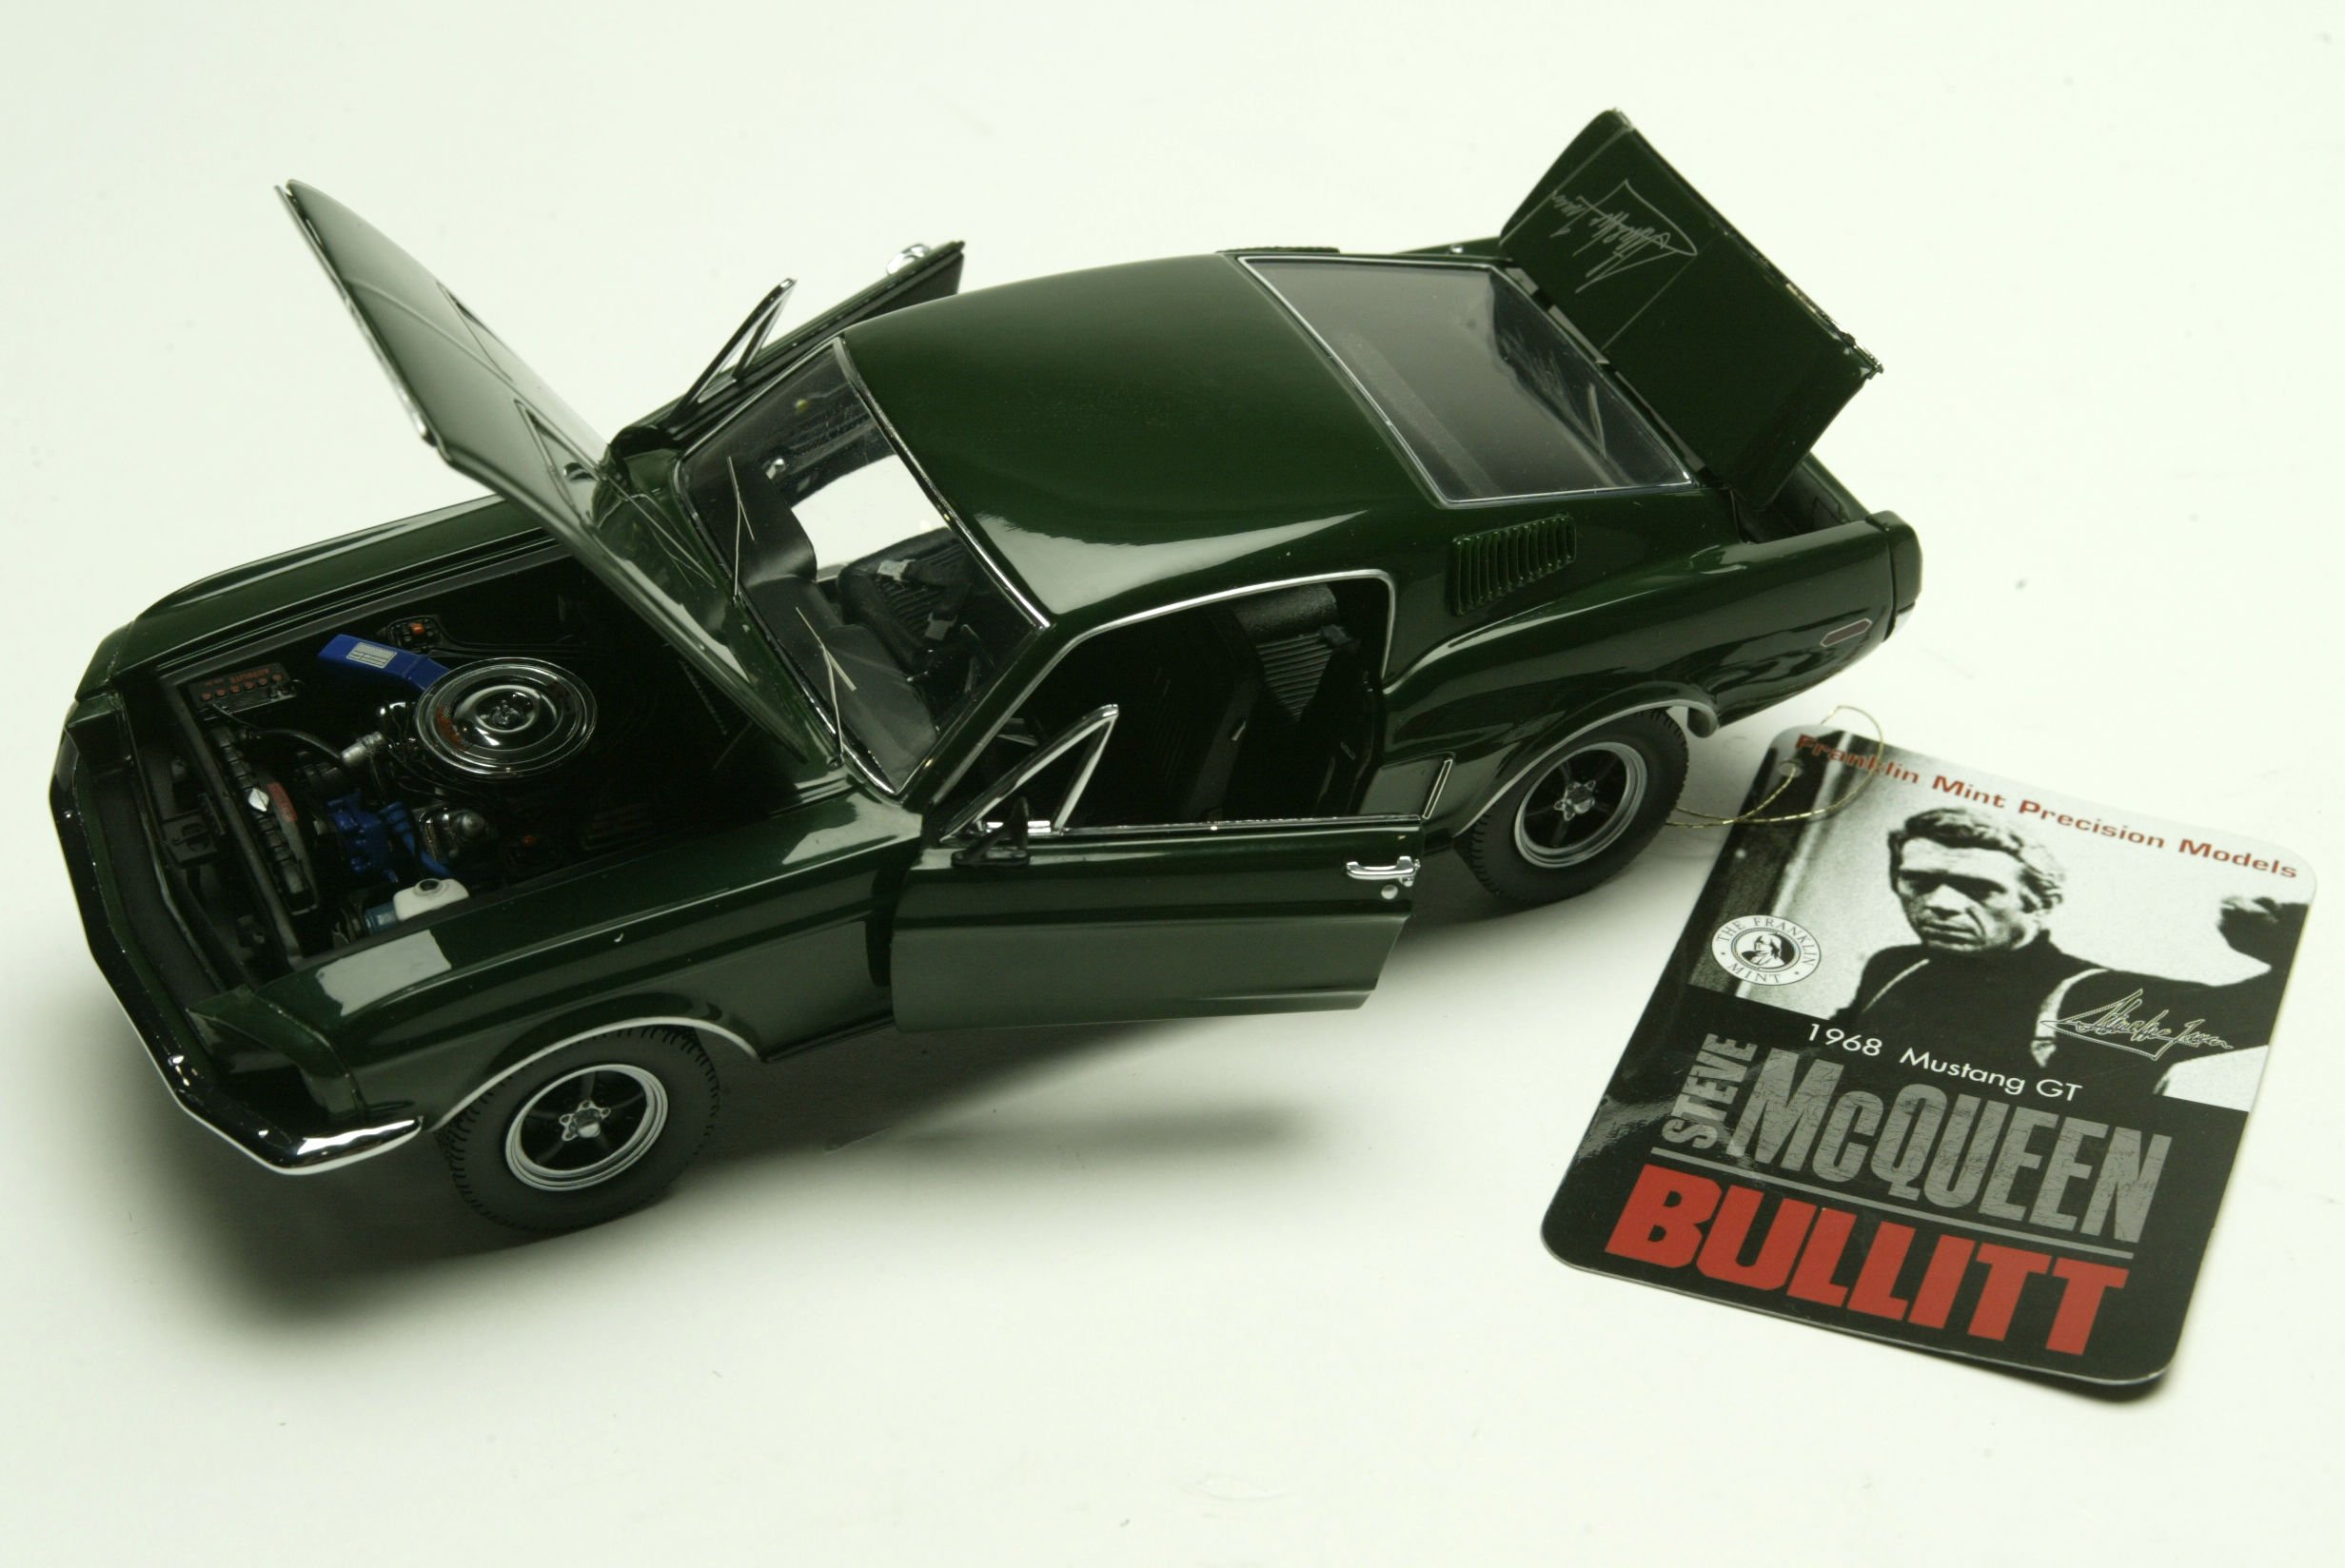 bullitt, Action, Crime, Mystery, Movie, Film, Ford, Mustang Wallpaper